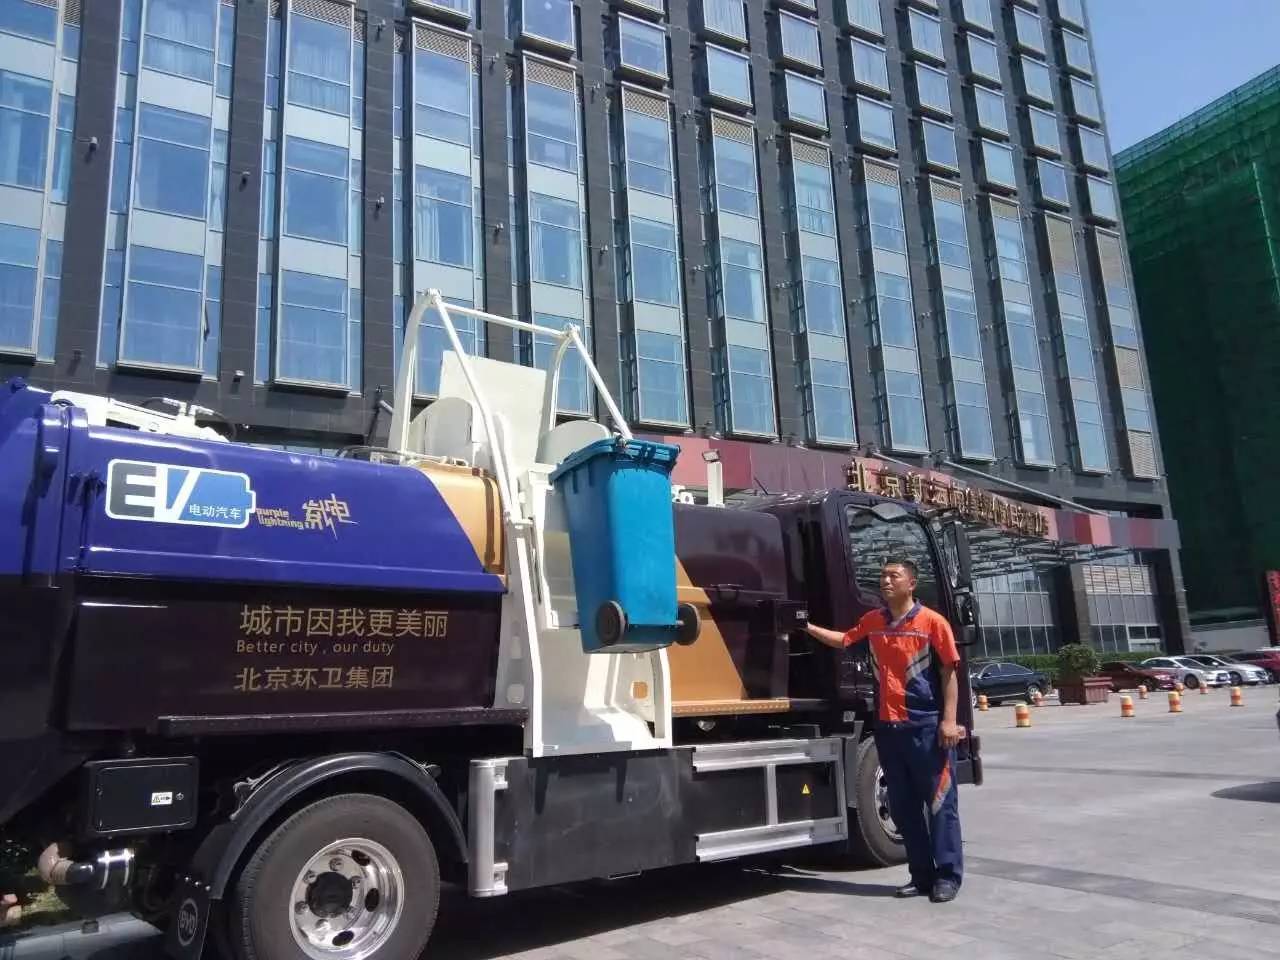 日均2600吨餐厨垃圾,北京如何破解处理难题?